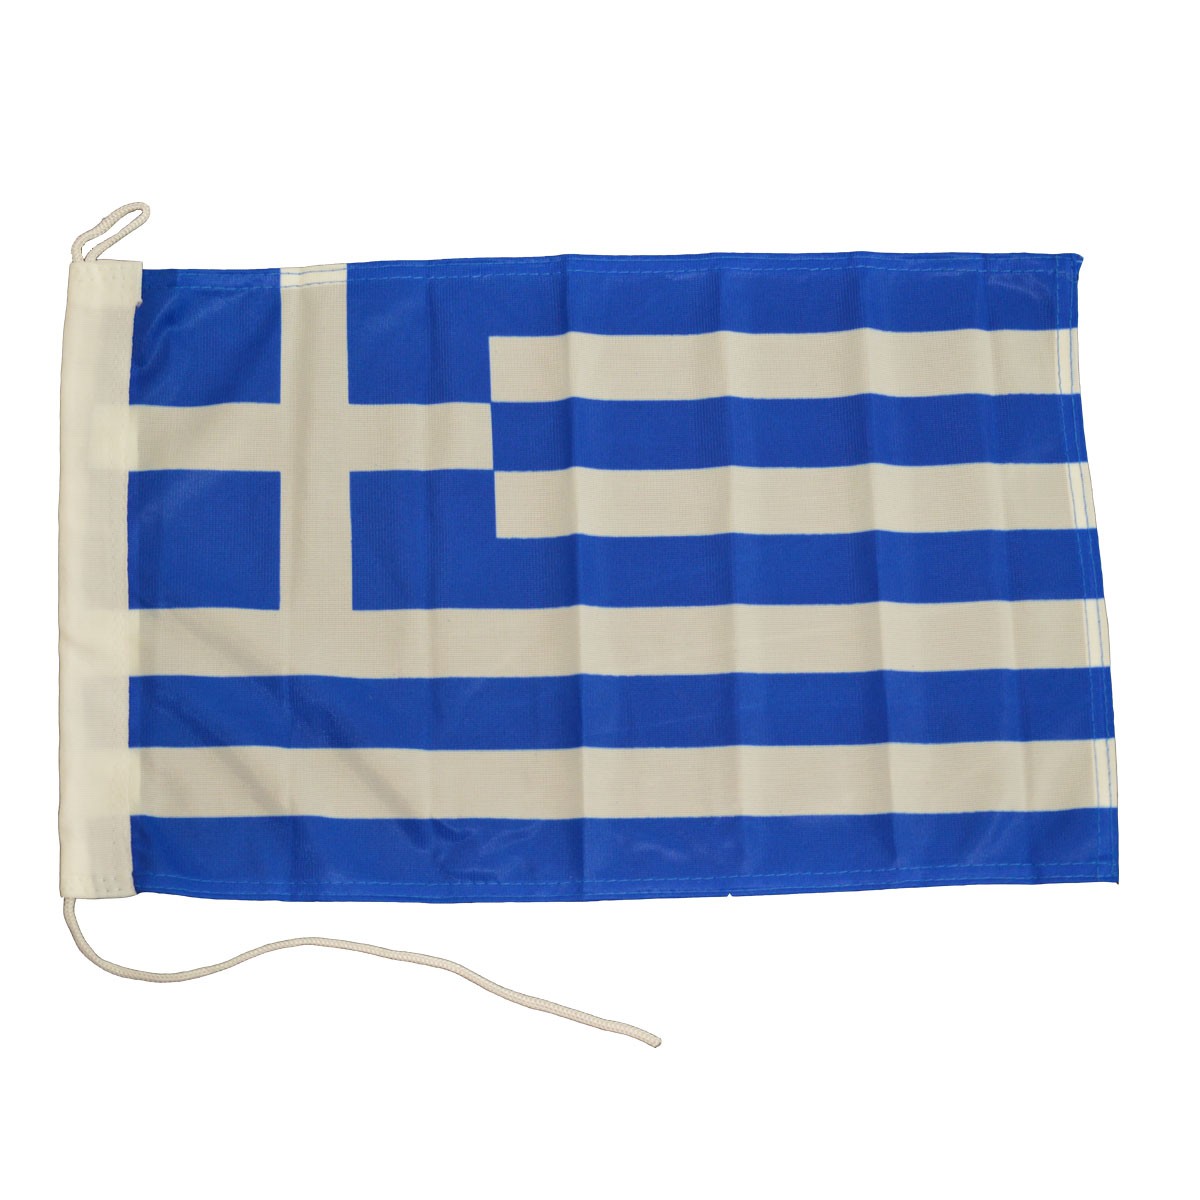 17.12 - Ελληνική Ορθογώνια Σημαία​ Μήκους 100cm